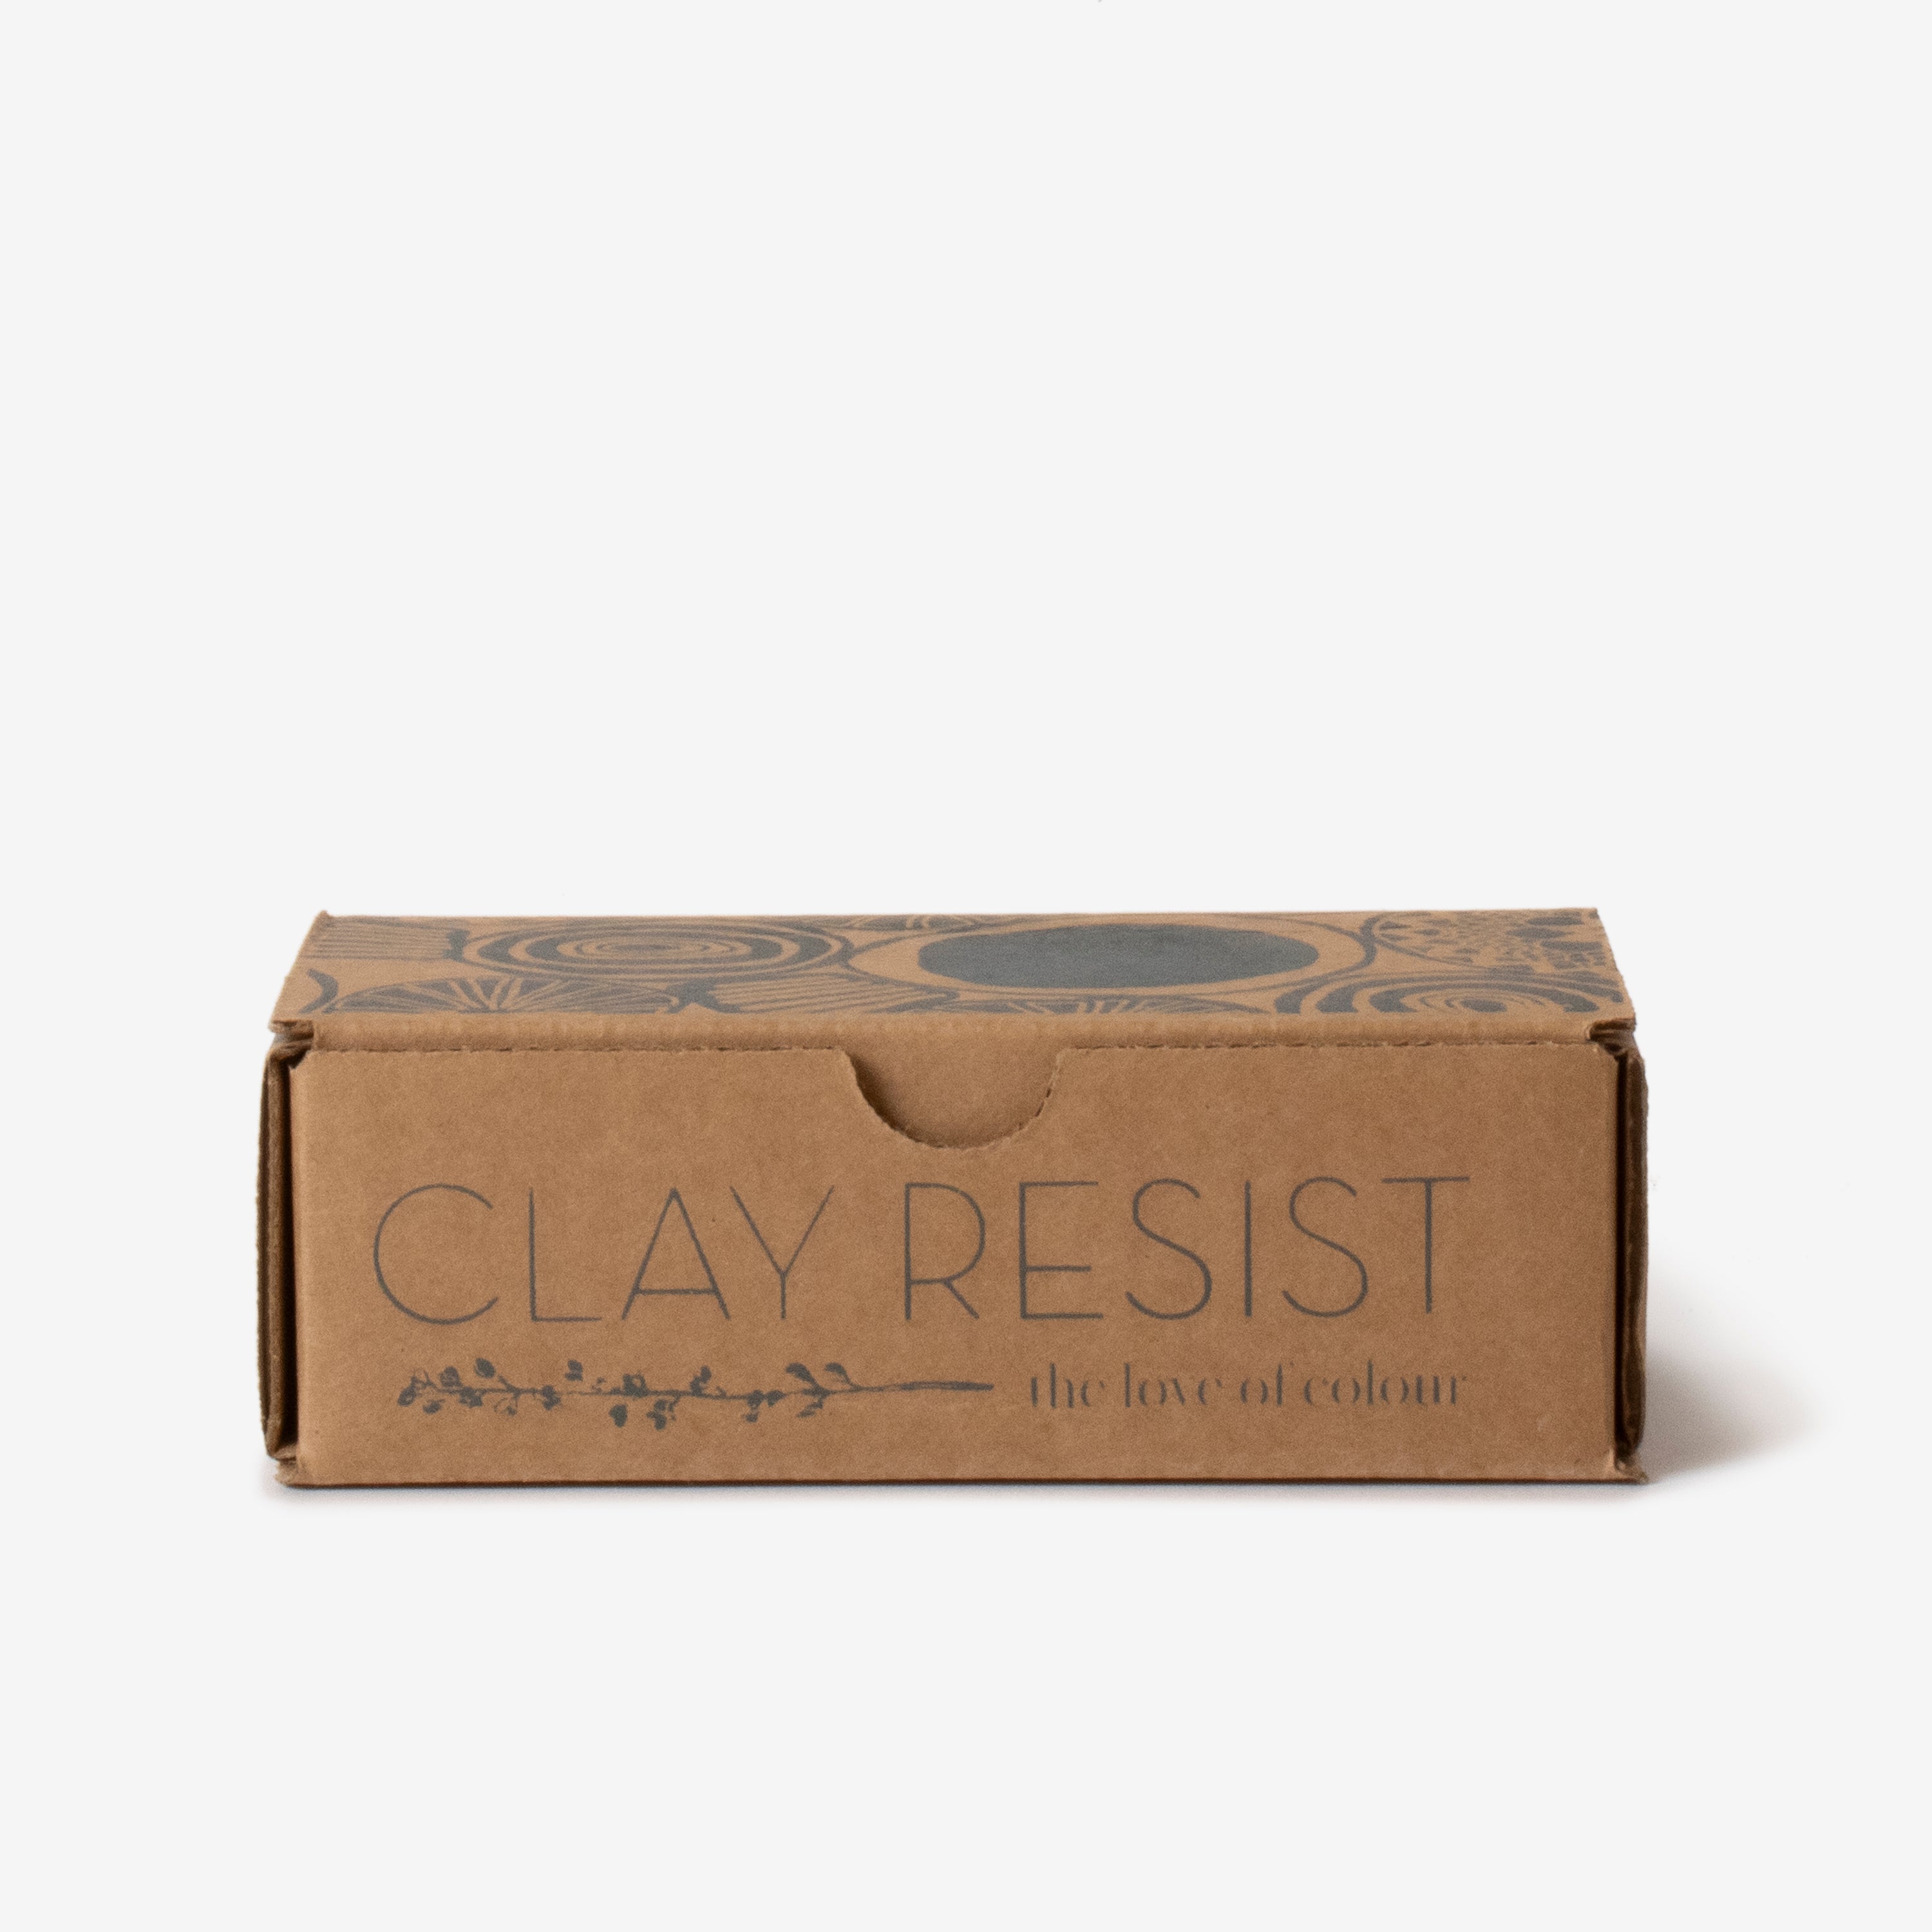 clay resist kit